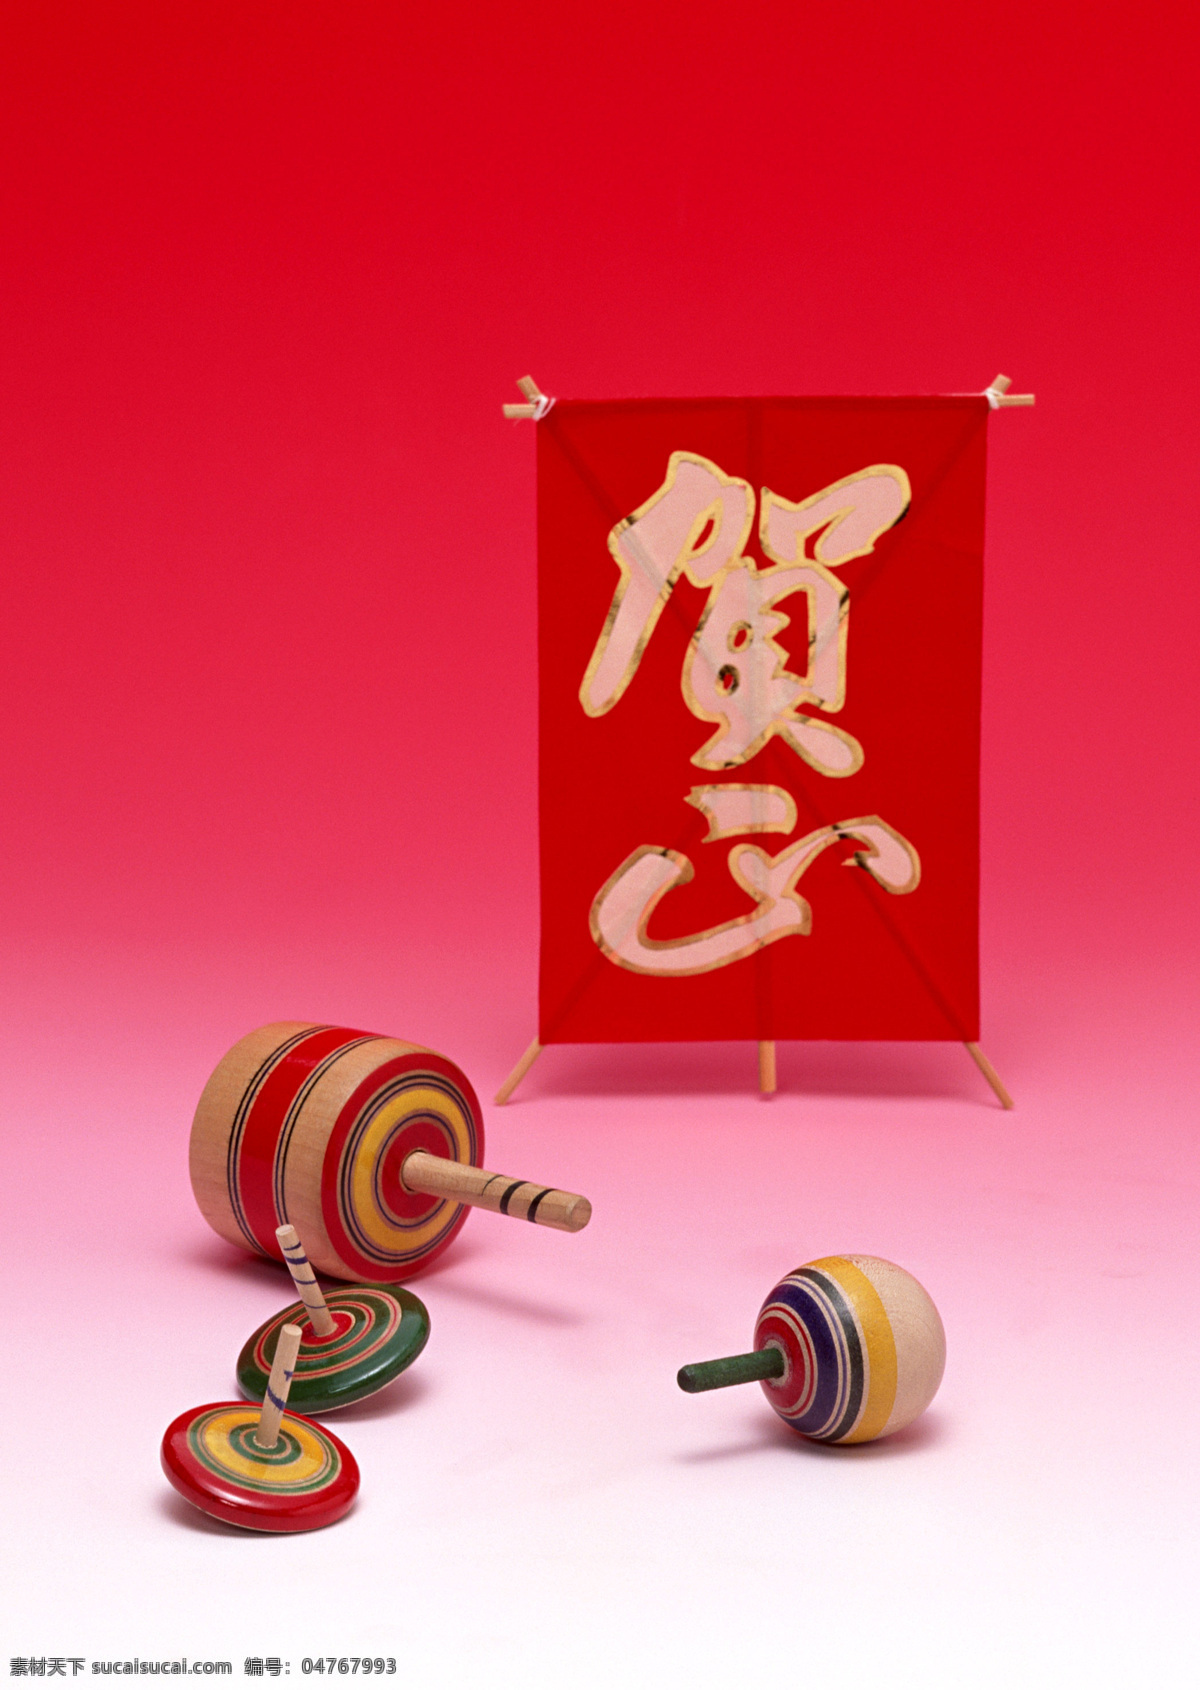 日本陀螺 新年 　 贺年 日本 陀螺 民族 特色 异国 风情 高 分辨率 高清晰 文化艺术 传统文化 日本新年素材 摄影图库